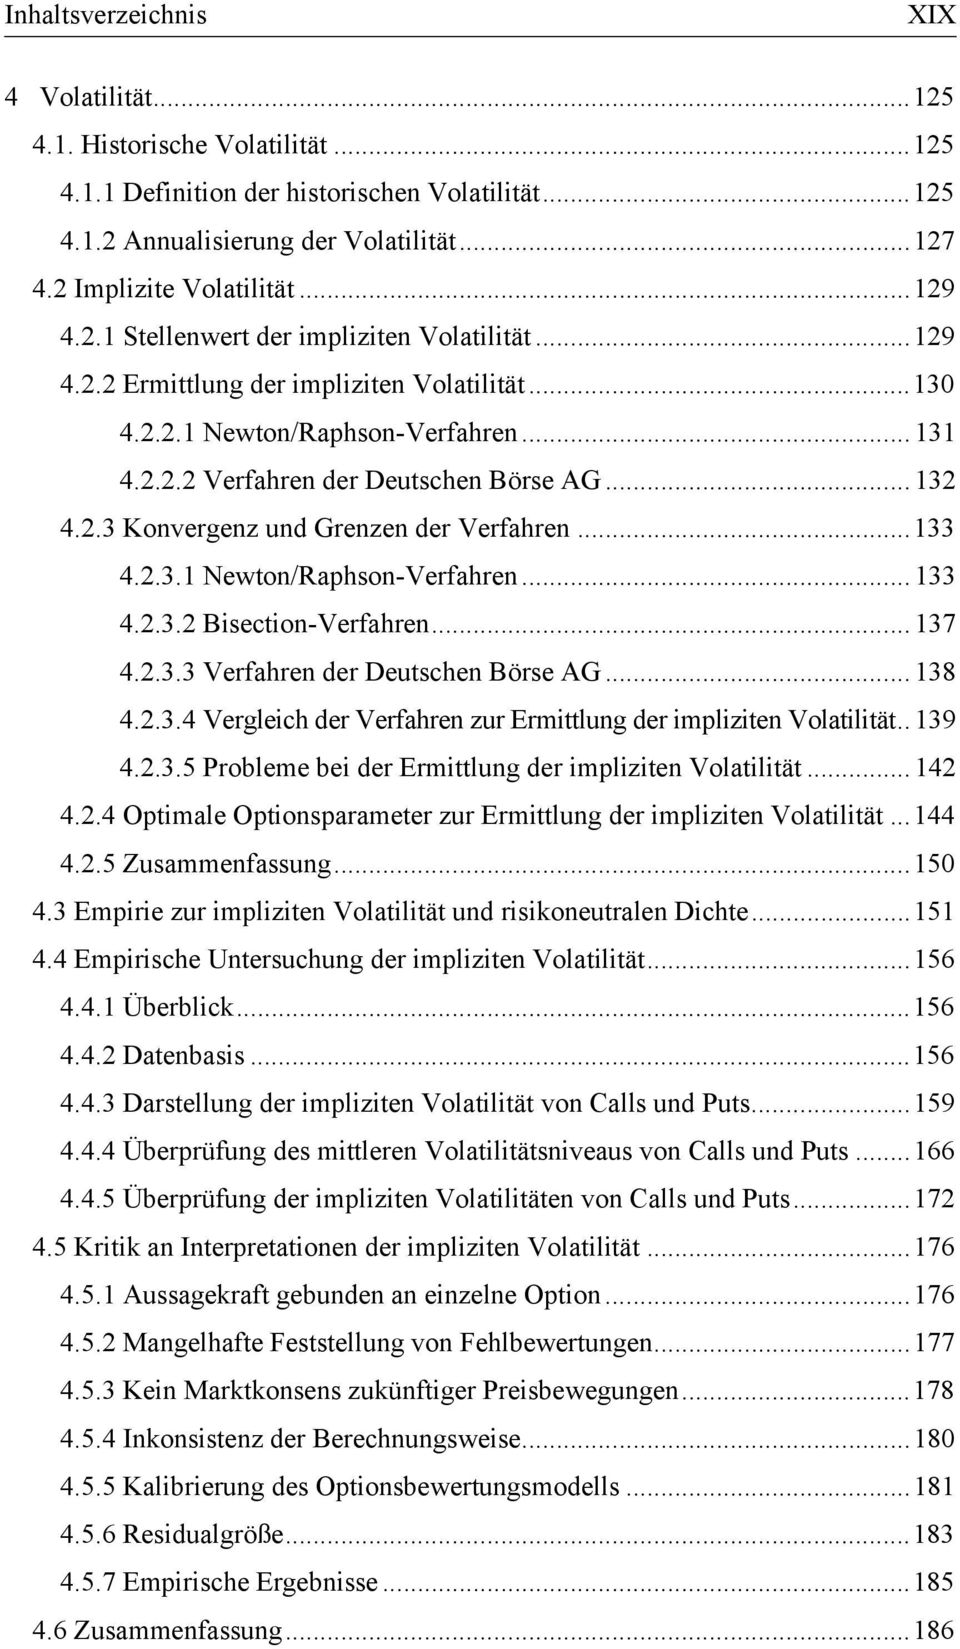 2.3.2 Bisection-Verfahren... 137 4.2.3.3 Verfahren der Deutschen Börse AG... 138 4.2.3.4 Vergleich der Verfahren zur Ermittlung der impliziten Volatilität.. 139 4.2.3.5 Probleme bei der Ermittlung der impliziten Volatilität.